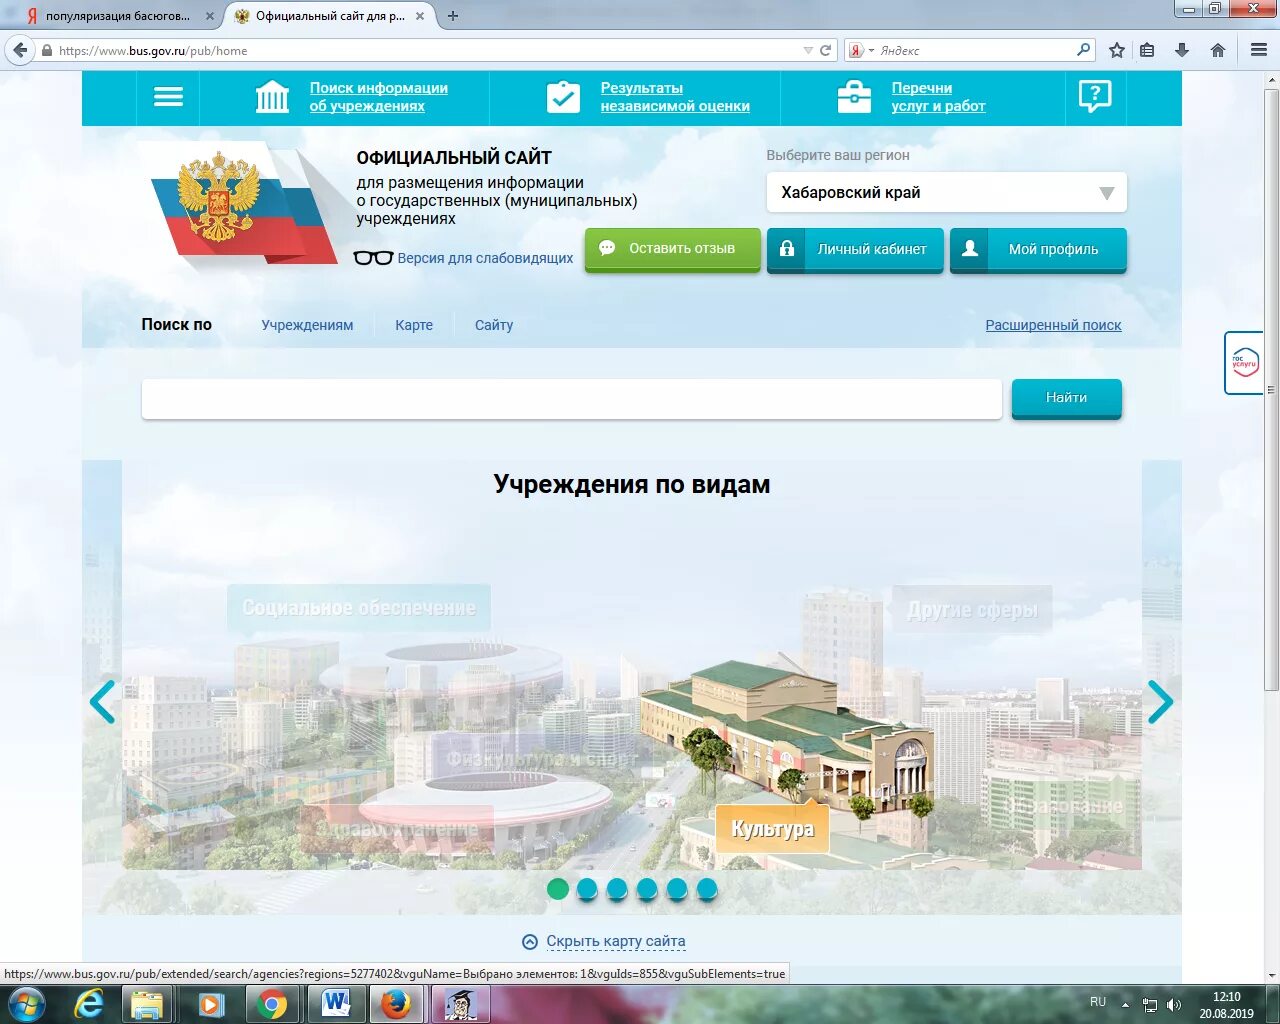 Бас гов. Bus.gov.ru баннер. Наша школа на Bus gov.